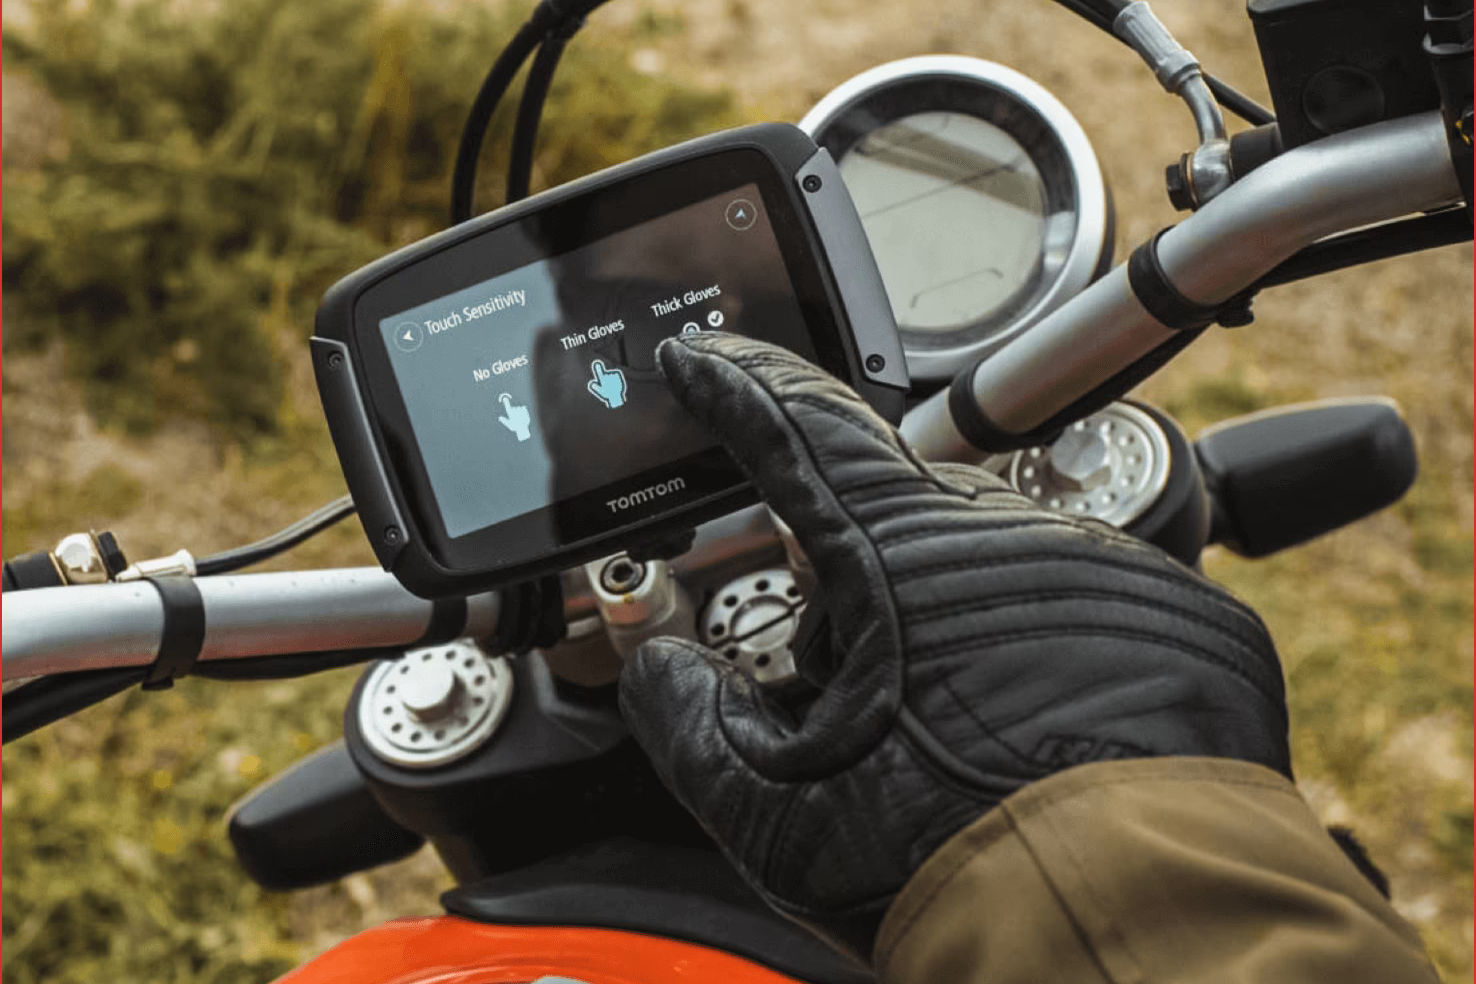 GPS moto : pourquoi acheter un GPS pour moto ? - Accessoires moto - Motards